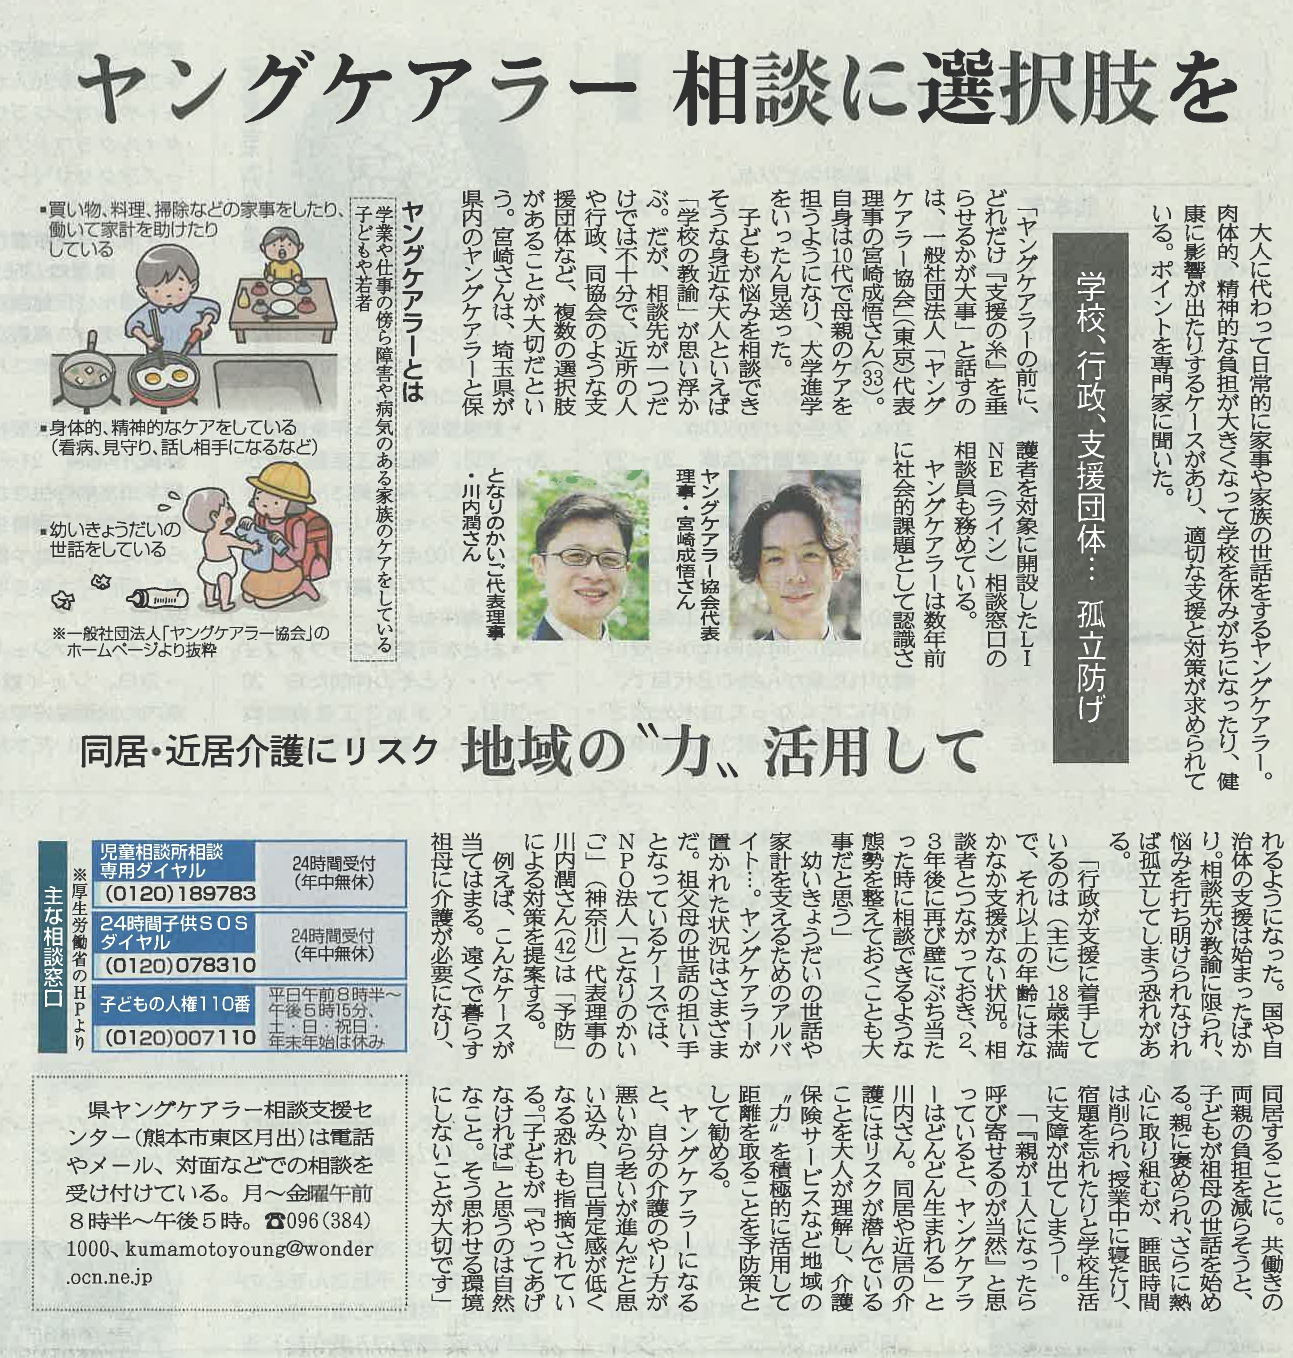 熊本日日新聞『ヤングケアラー相談に選択肢を』